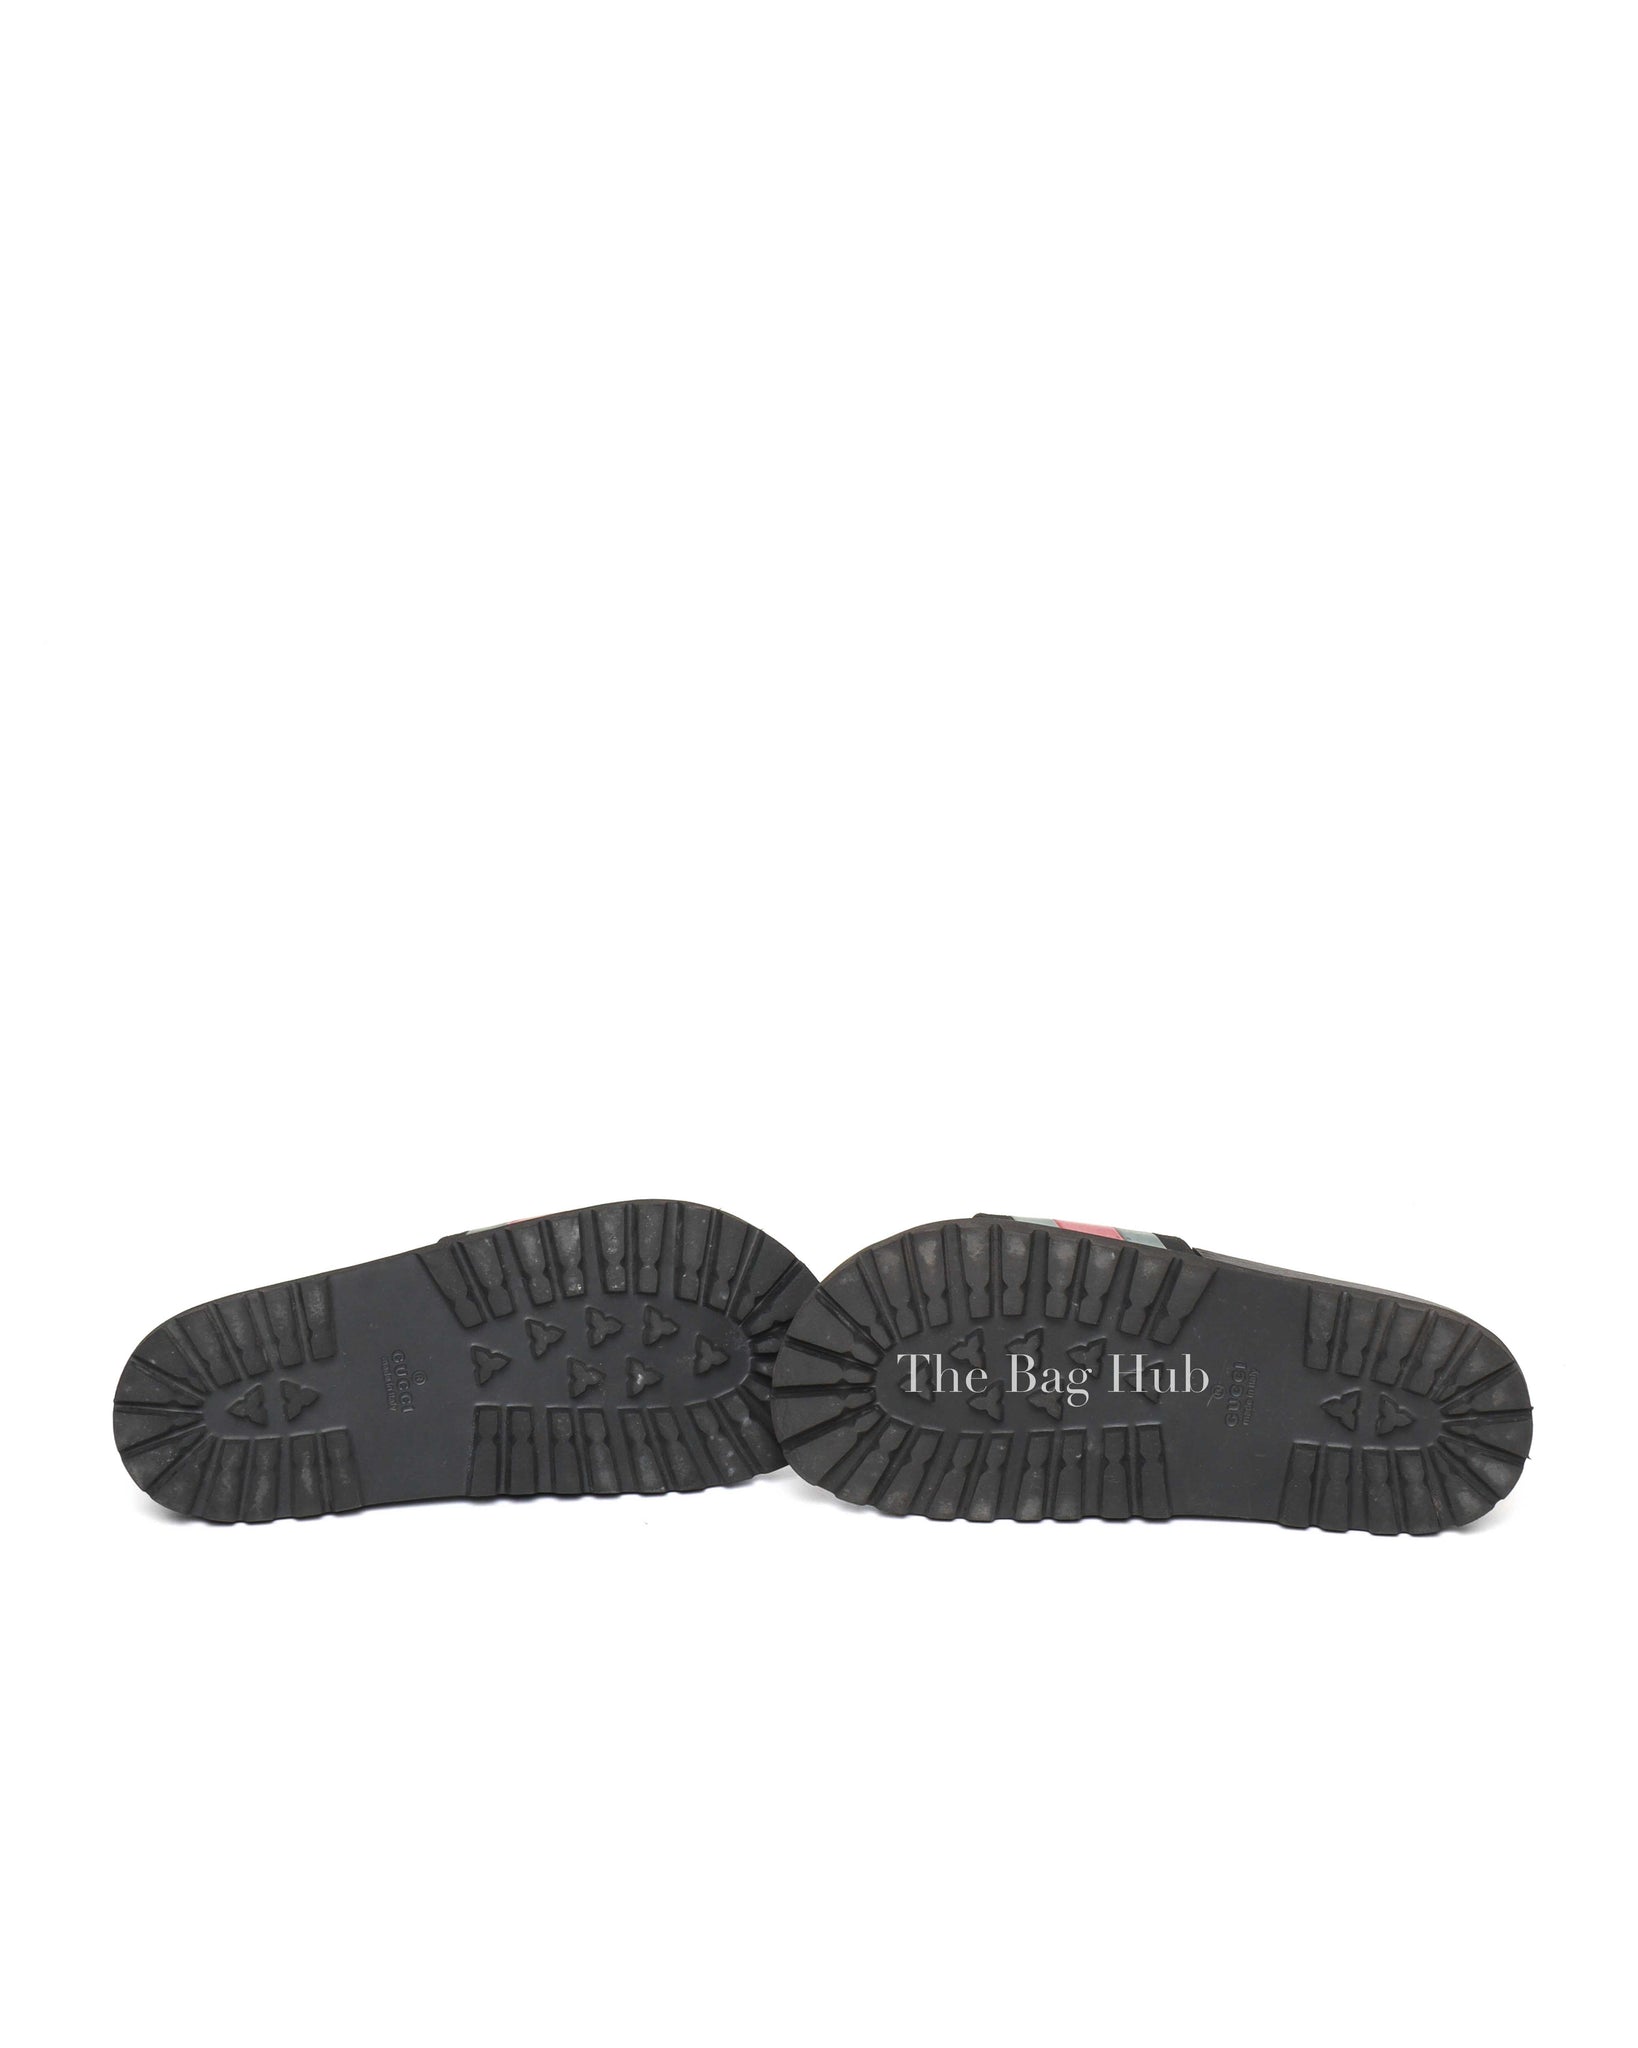 Gucci Black Web Accent Rubber Slide Sandals Size 7-7